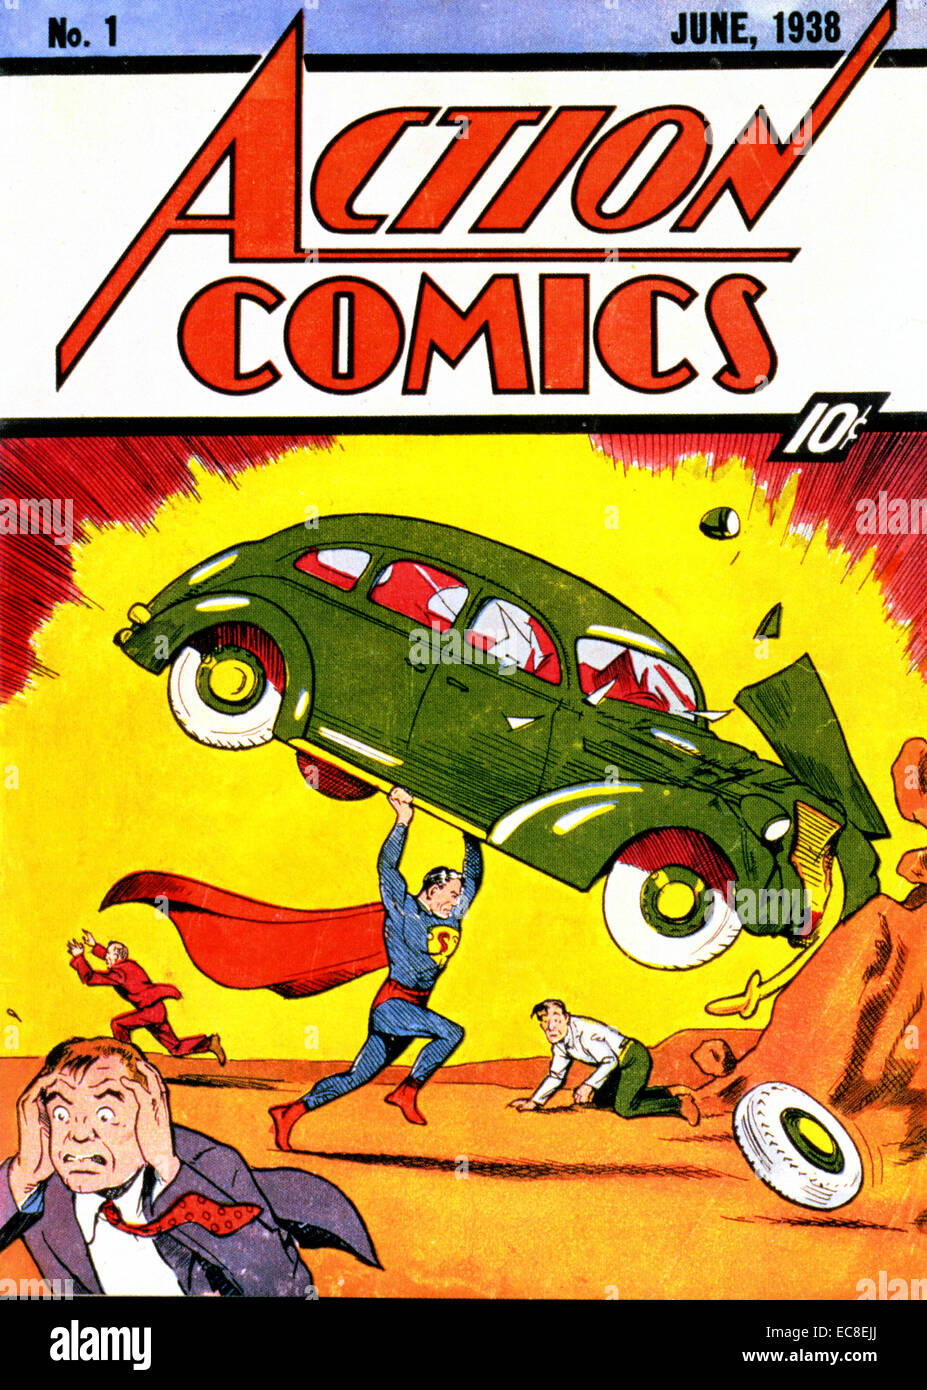 ACTION COMICS veröffentlicht Nr. 1 im Juni 1938 mit dem ersten Auftritt von Superman Stockfoto